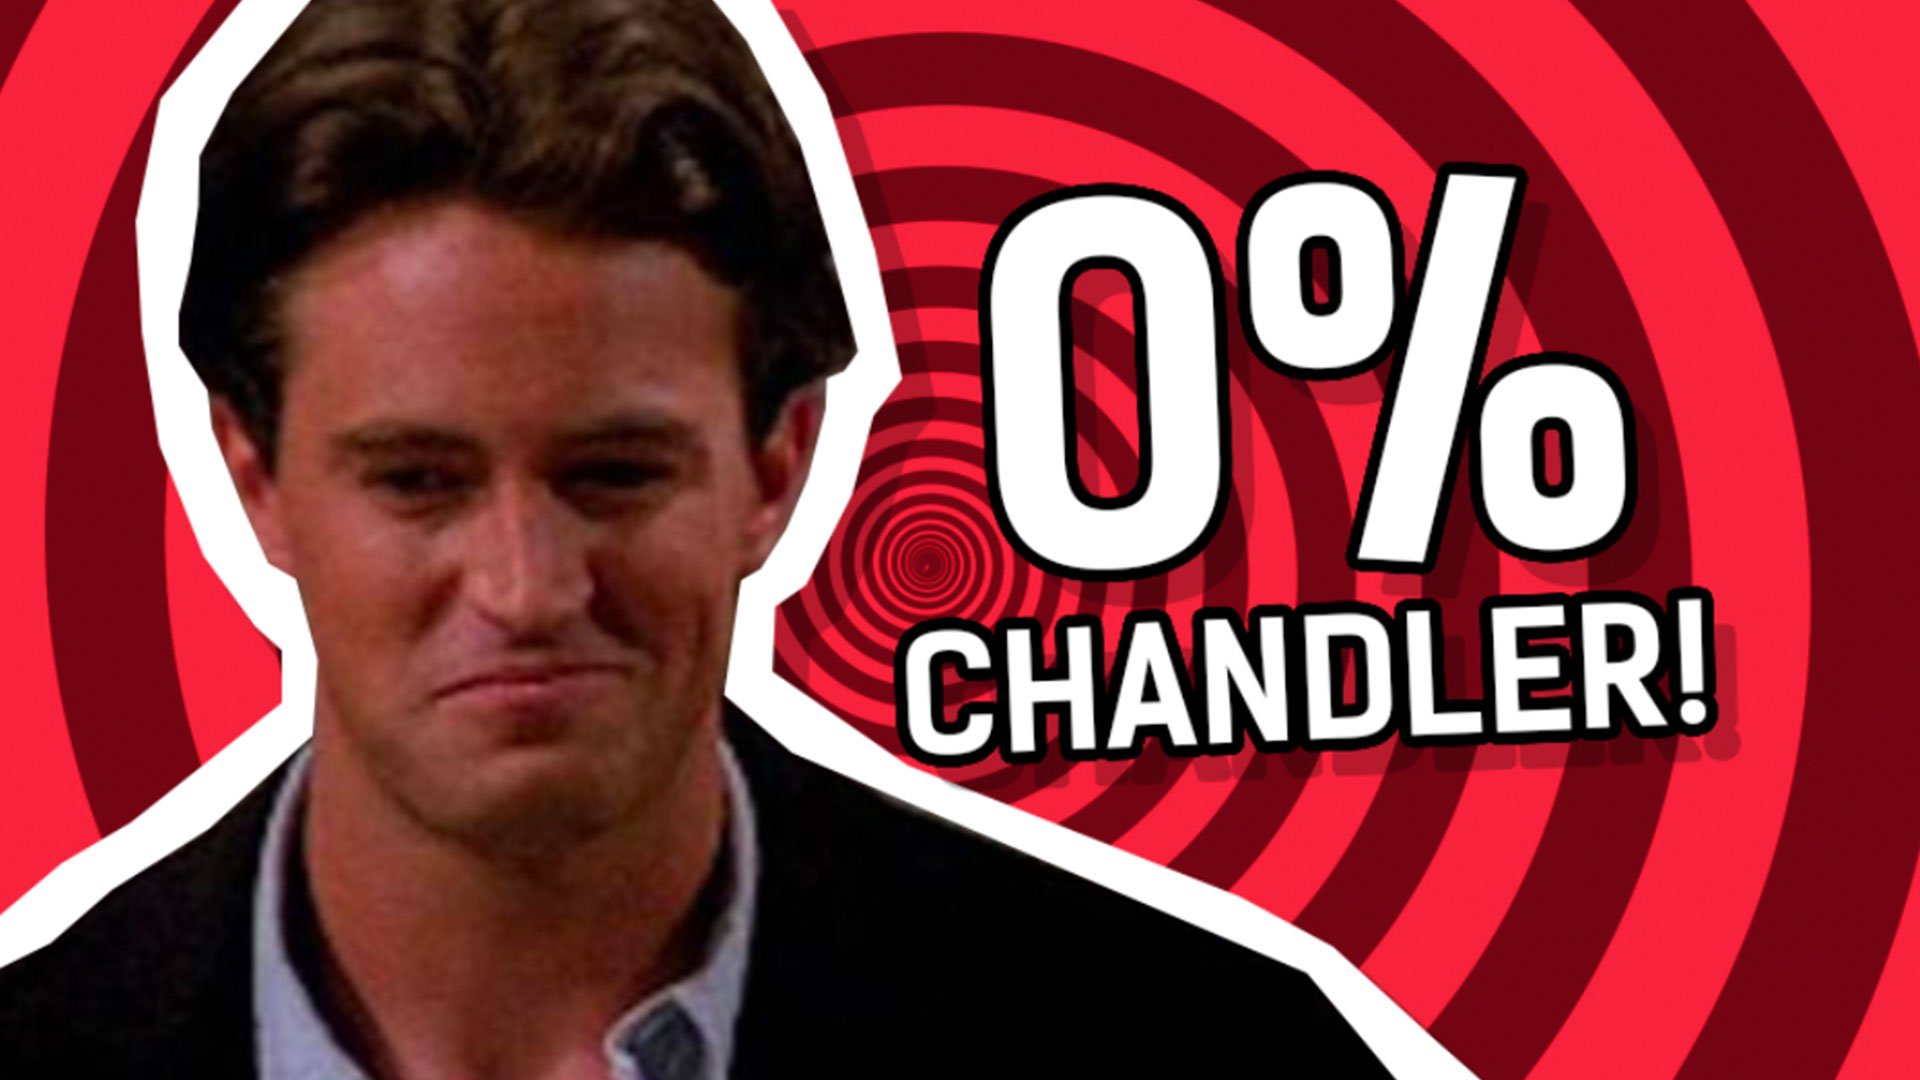 Result: 0% Chandler